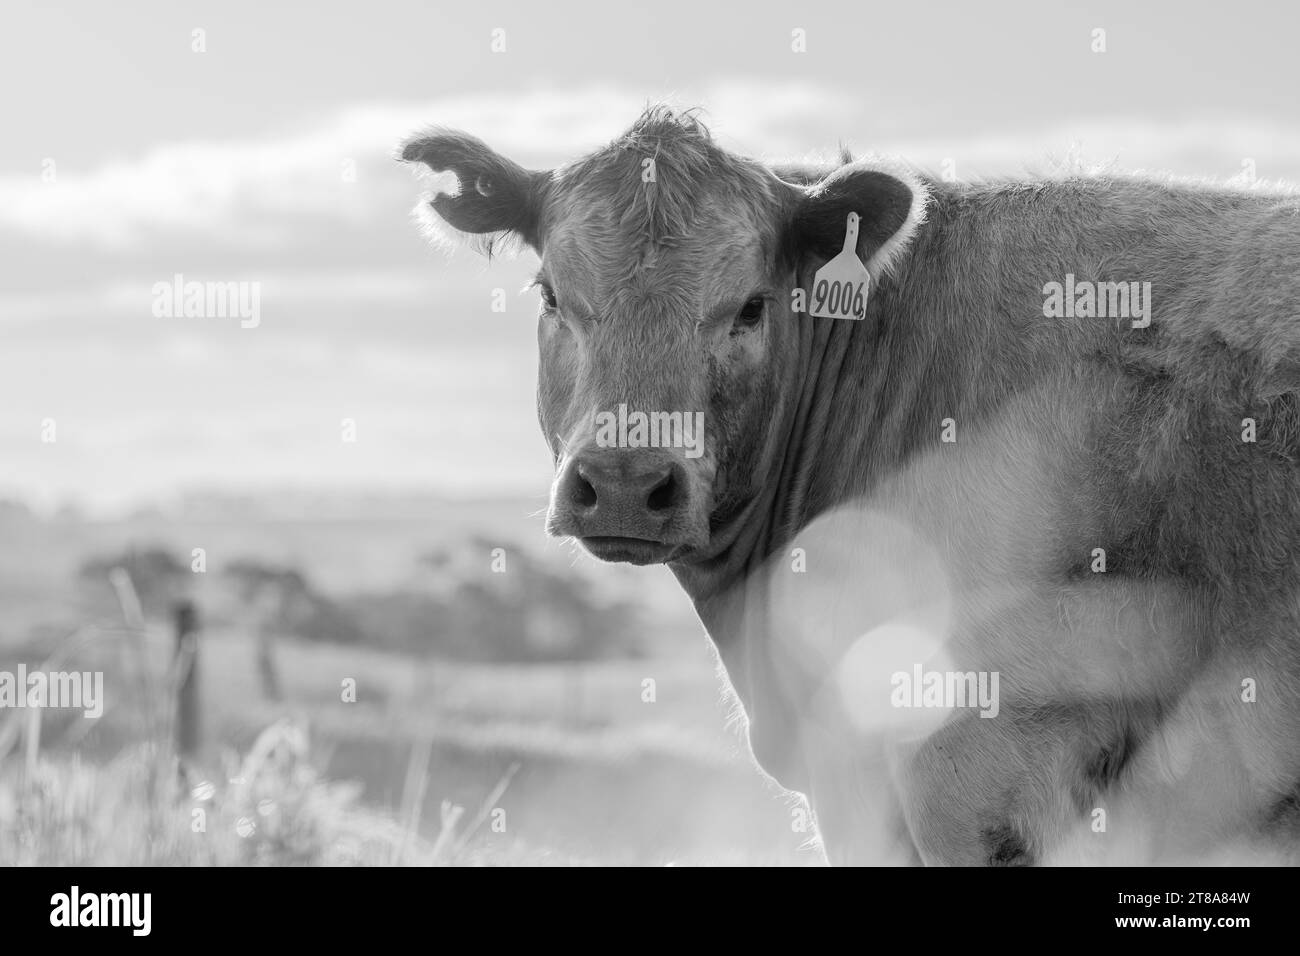 Porträt einer australischen Wagyu-Kühe, die auf einem Feld auf der Weide weiden. Nahaufnahme einer schwarzen angus-Kuh, die im Frühling Gras in einem Fahrerlager isst Stockfoto